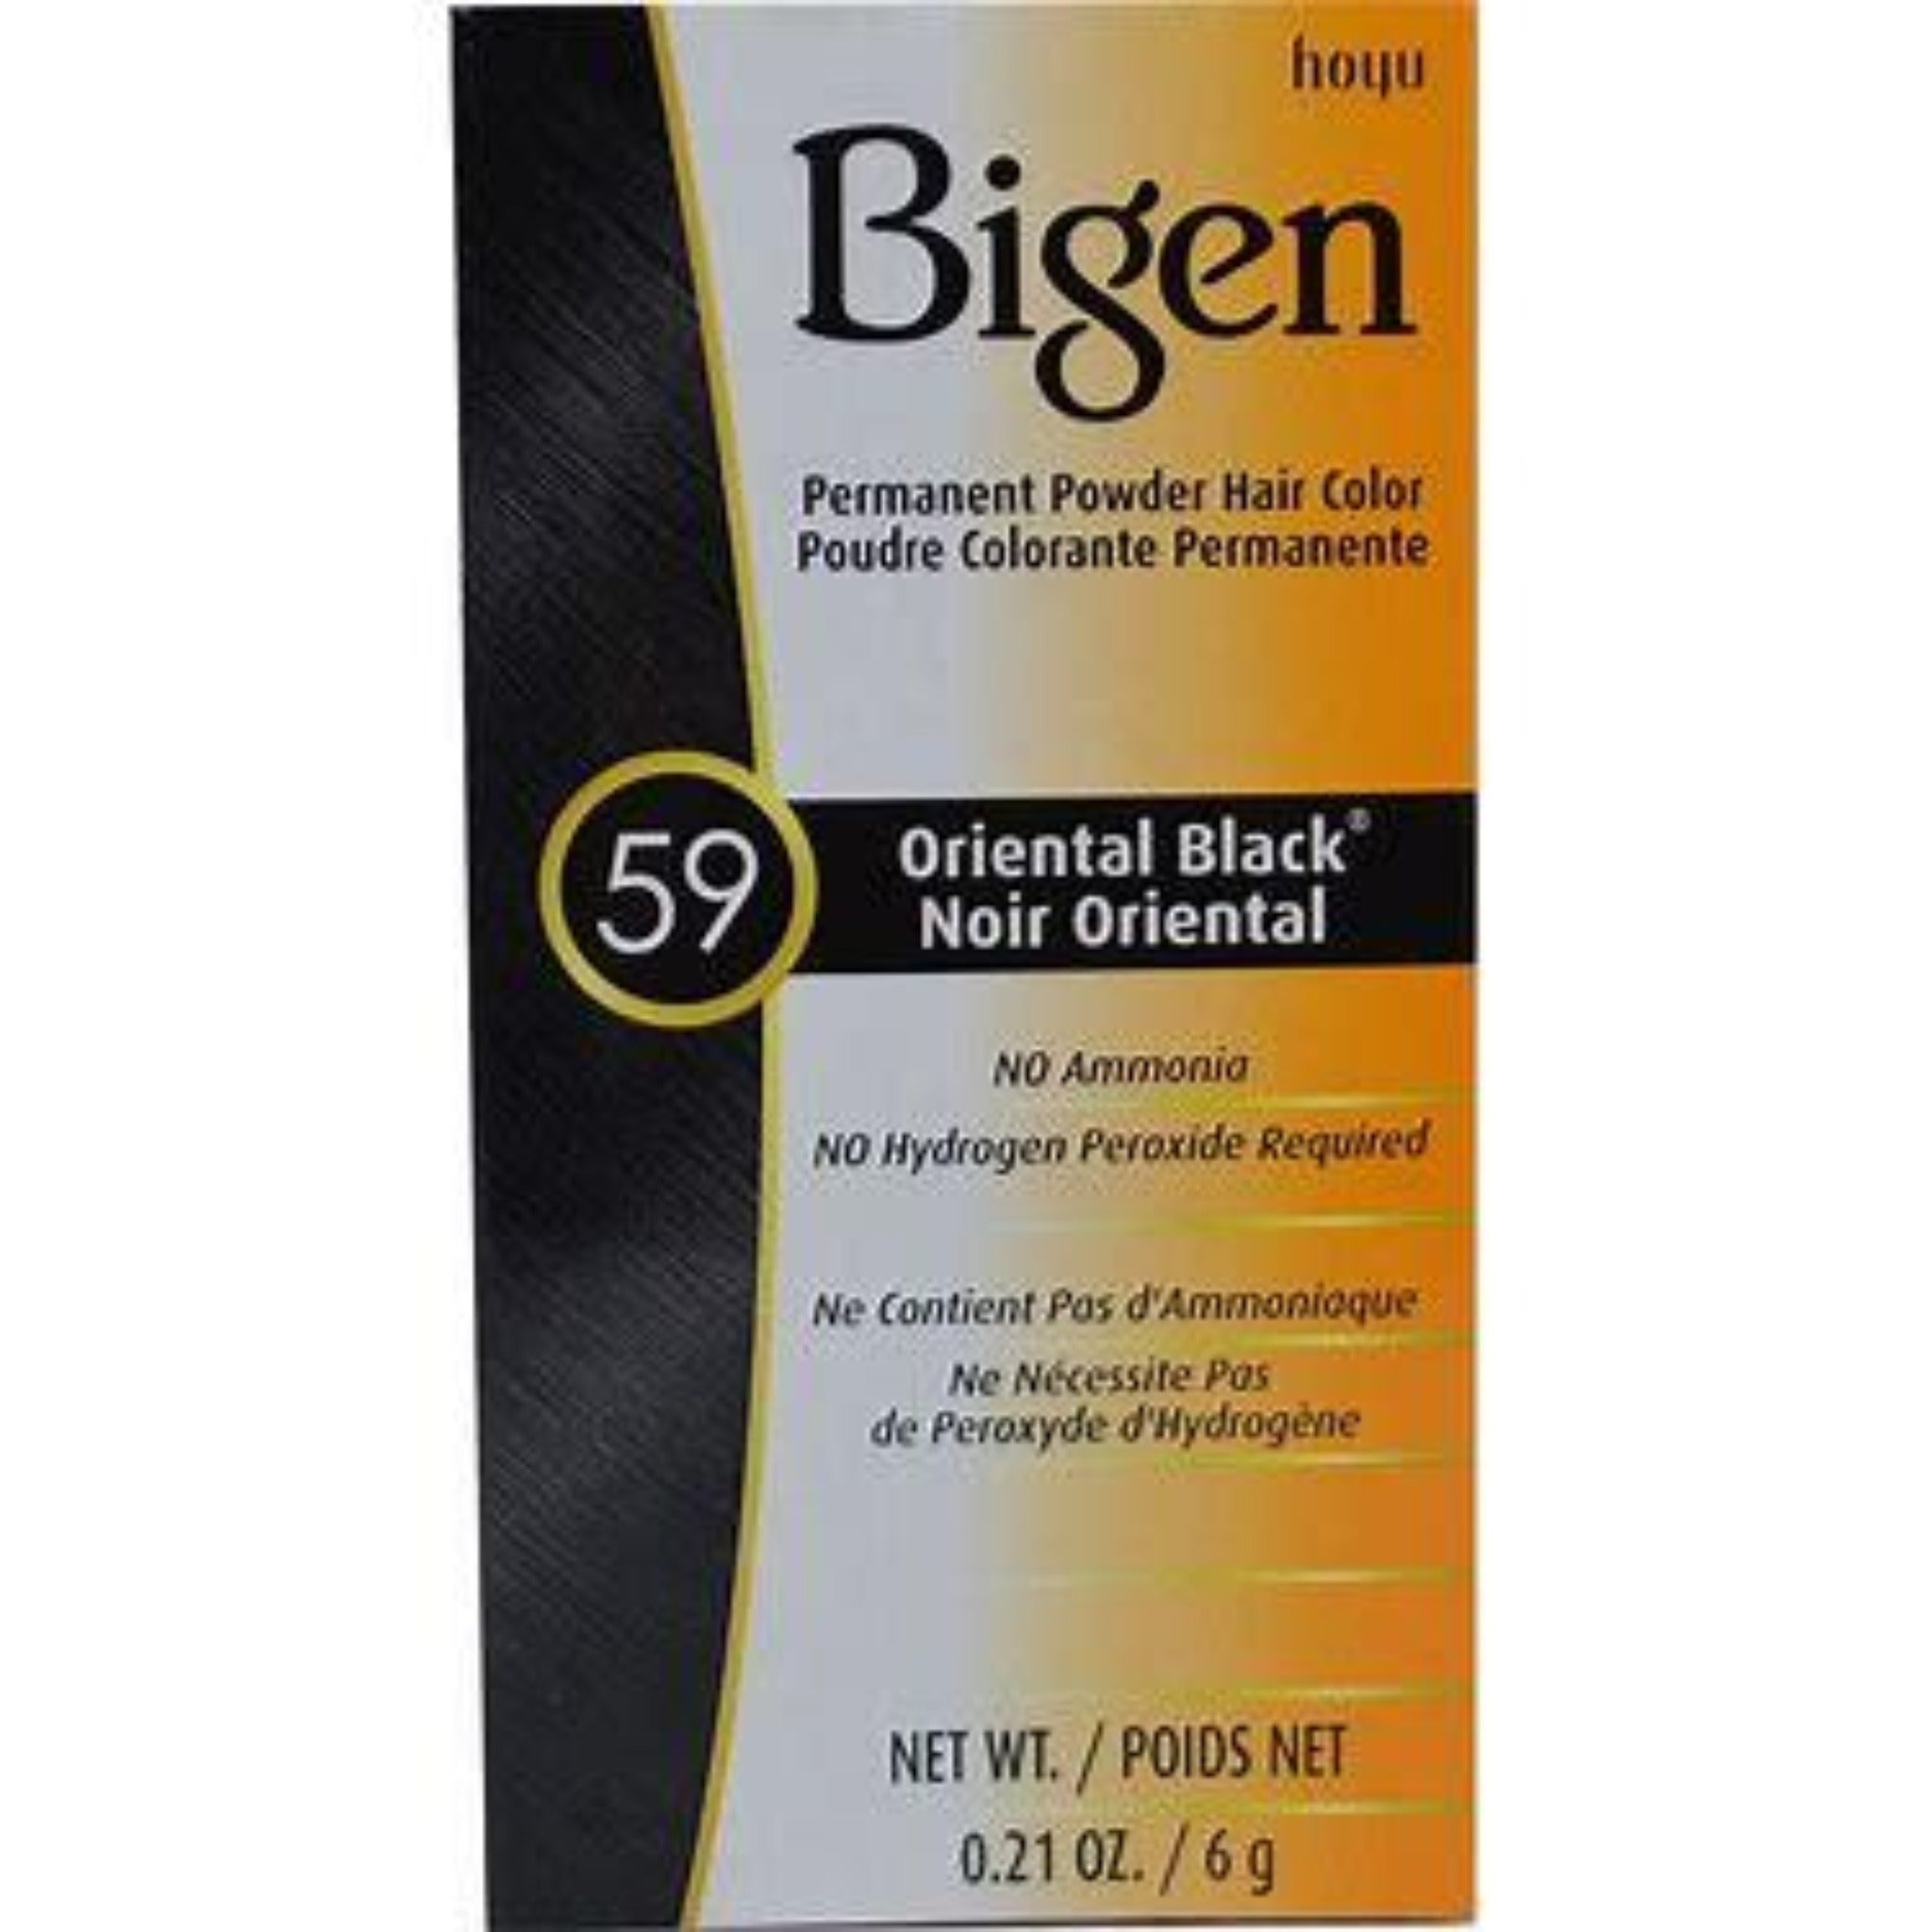 Bigen # 59 Oriental Black